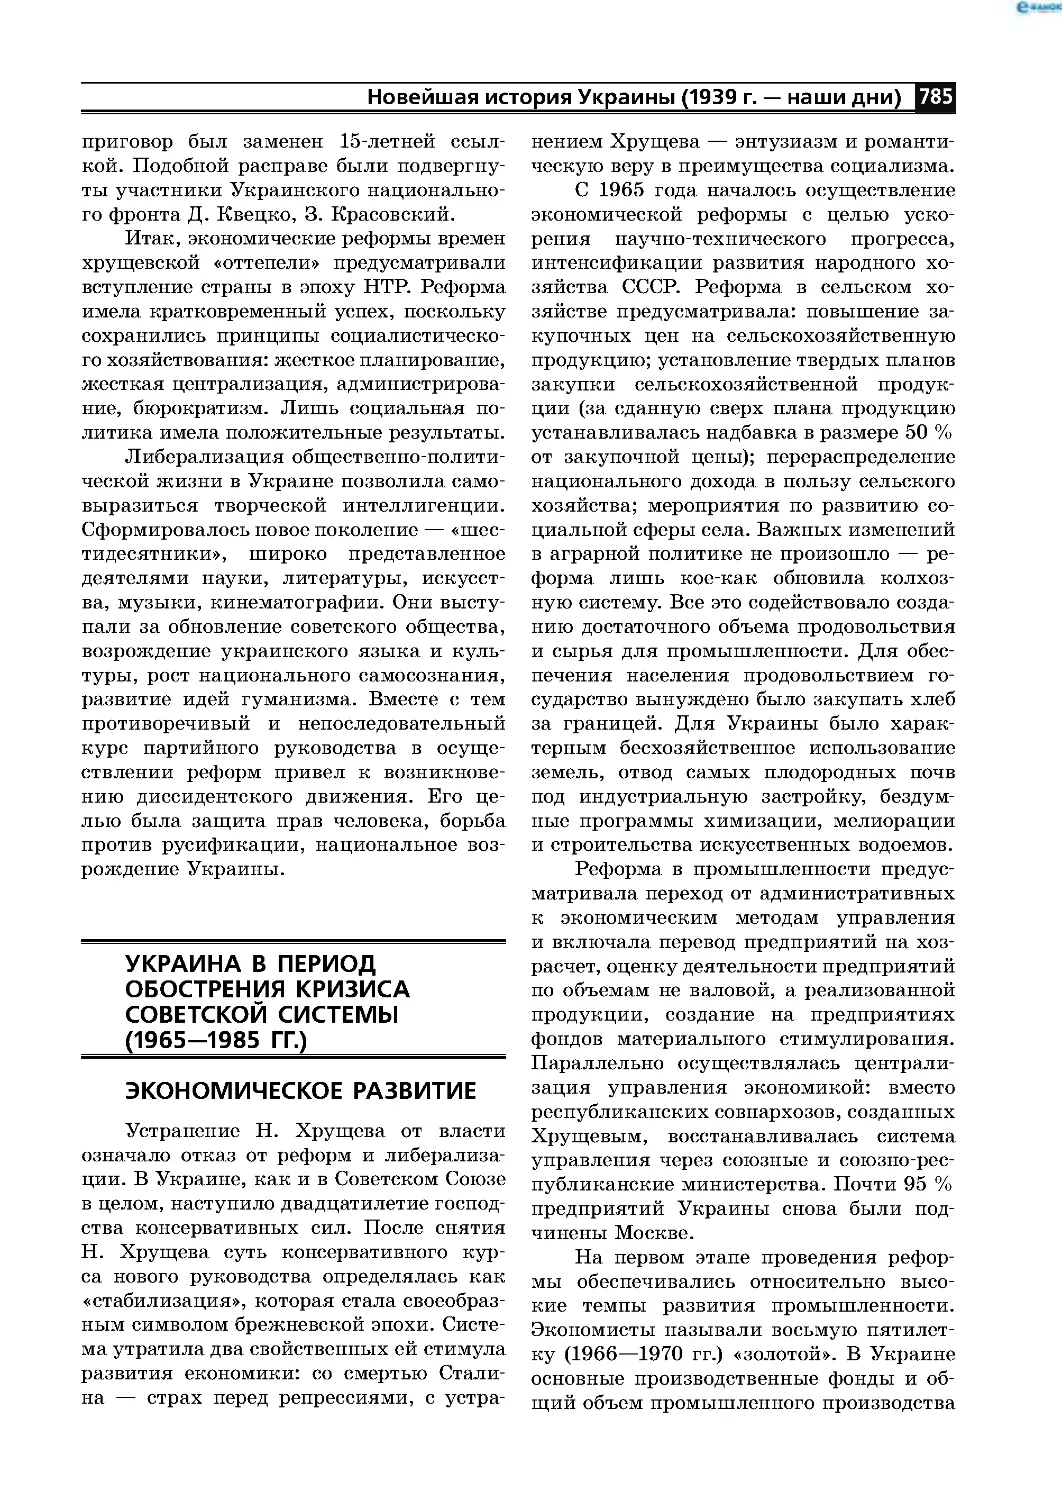 Украина в период обострения кризиса советской системы
(1965—1985 гг )